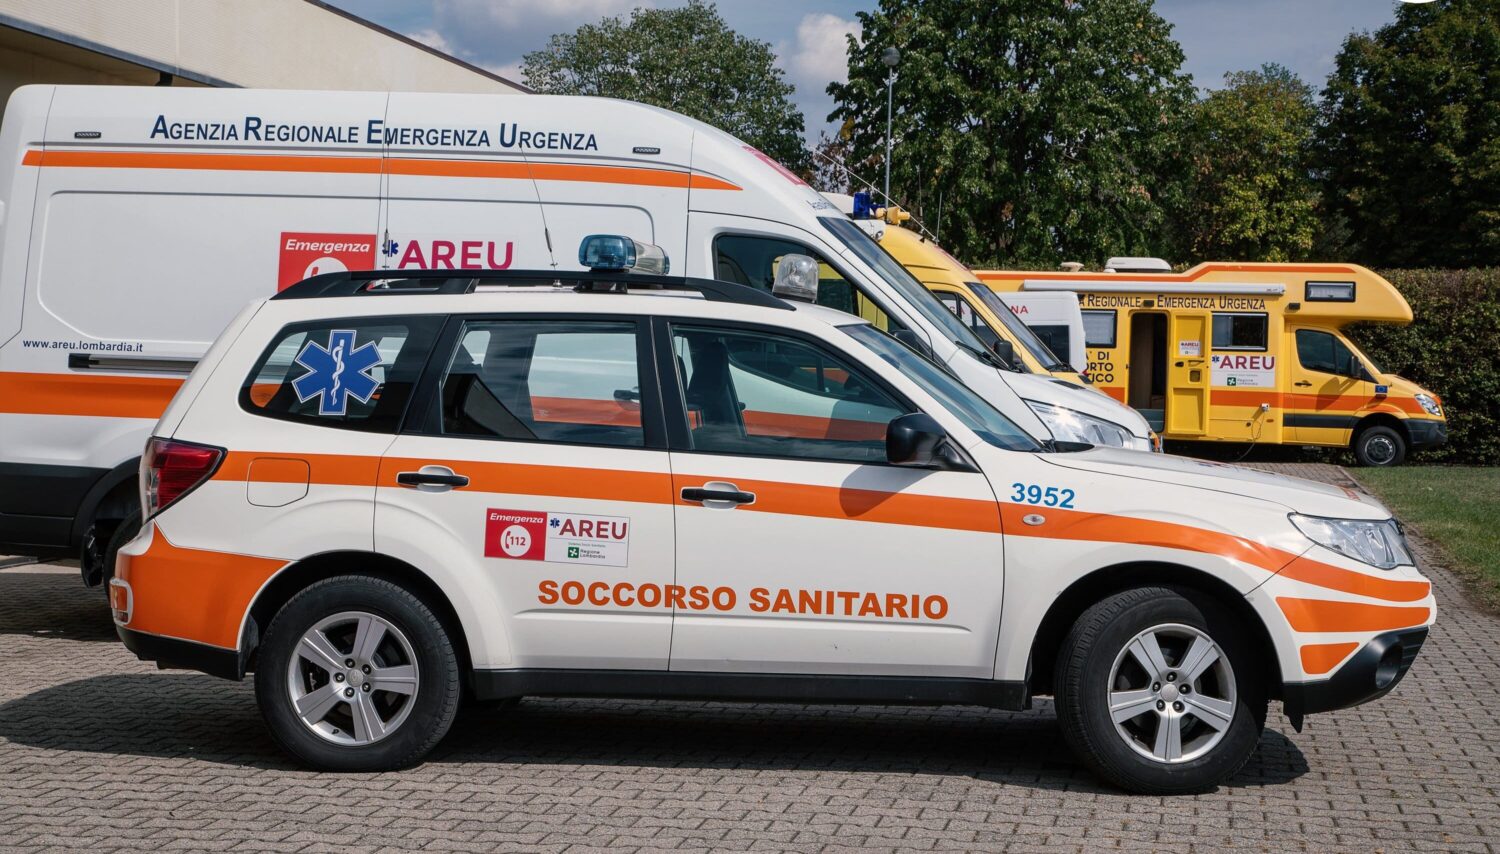 Ambulanze bidone e debiti. Blitz della Finanza in Calabria sugli affari del Pirellone